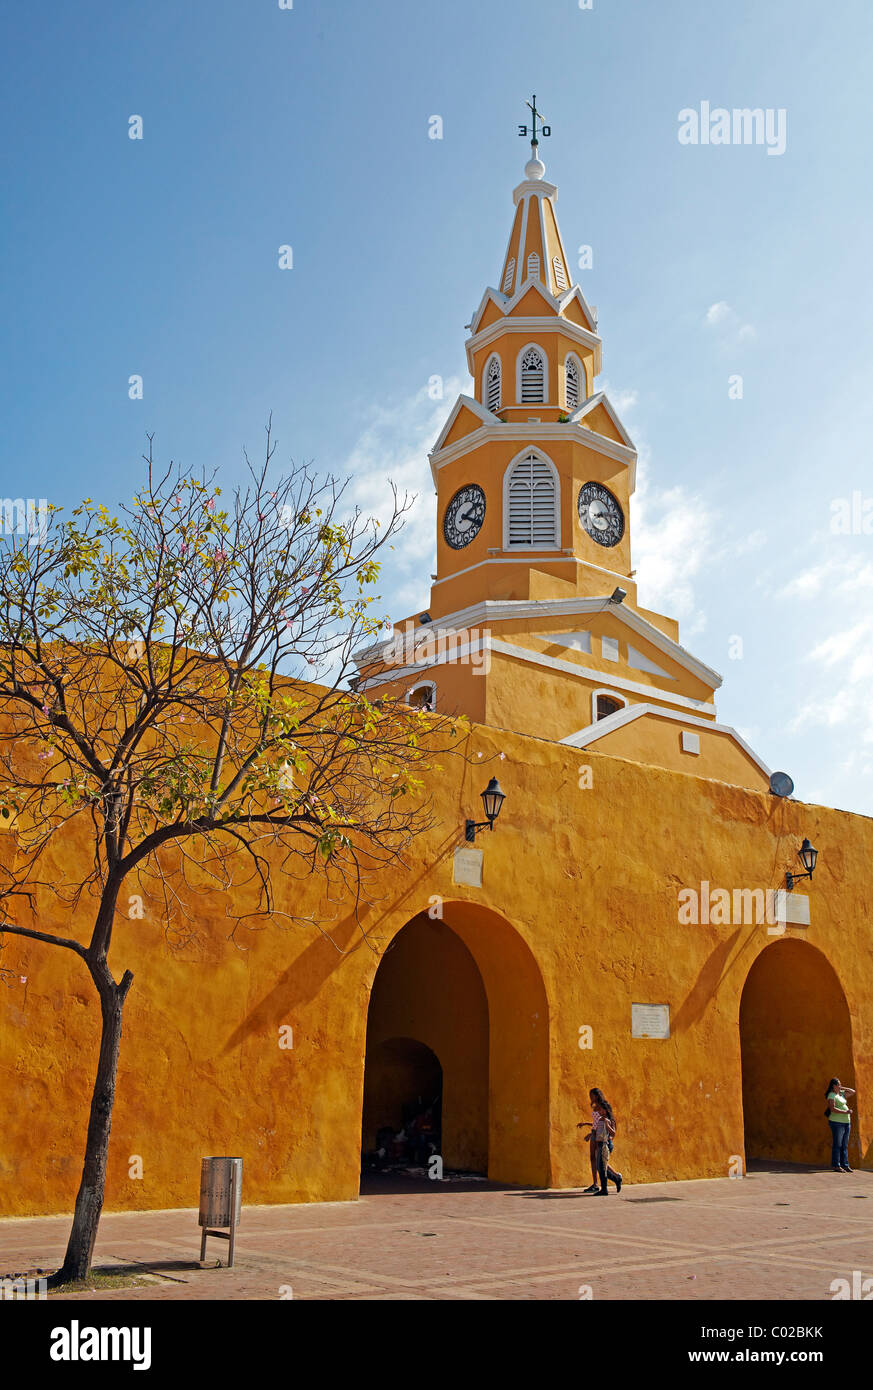 Tour de l'horloge jaune, vieille ville de Carthagène, Colombie Banque D'Images